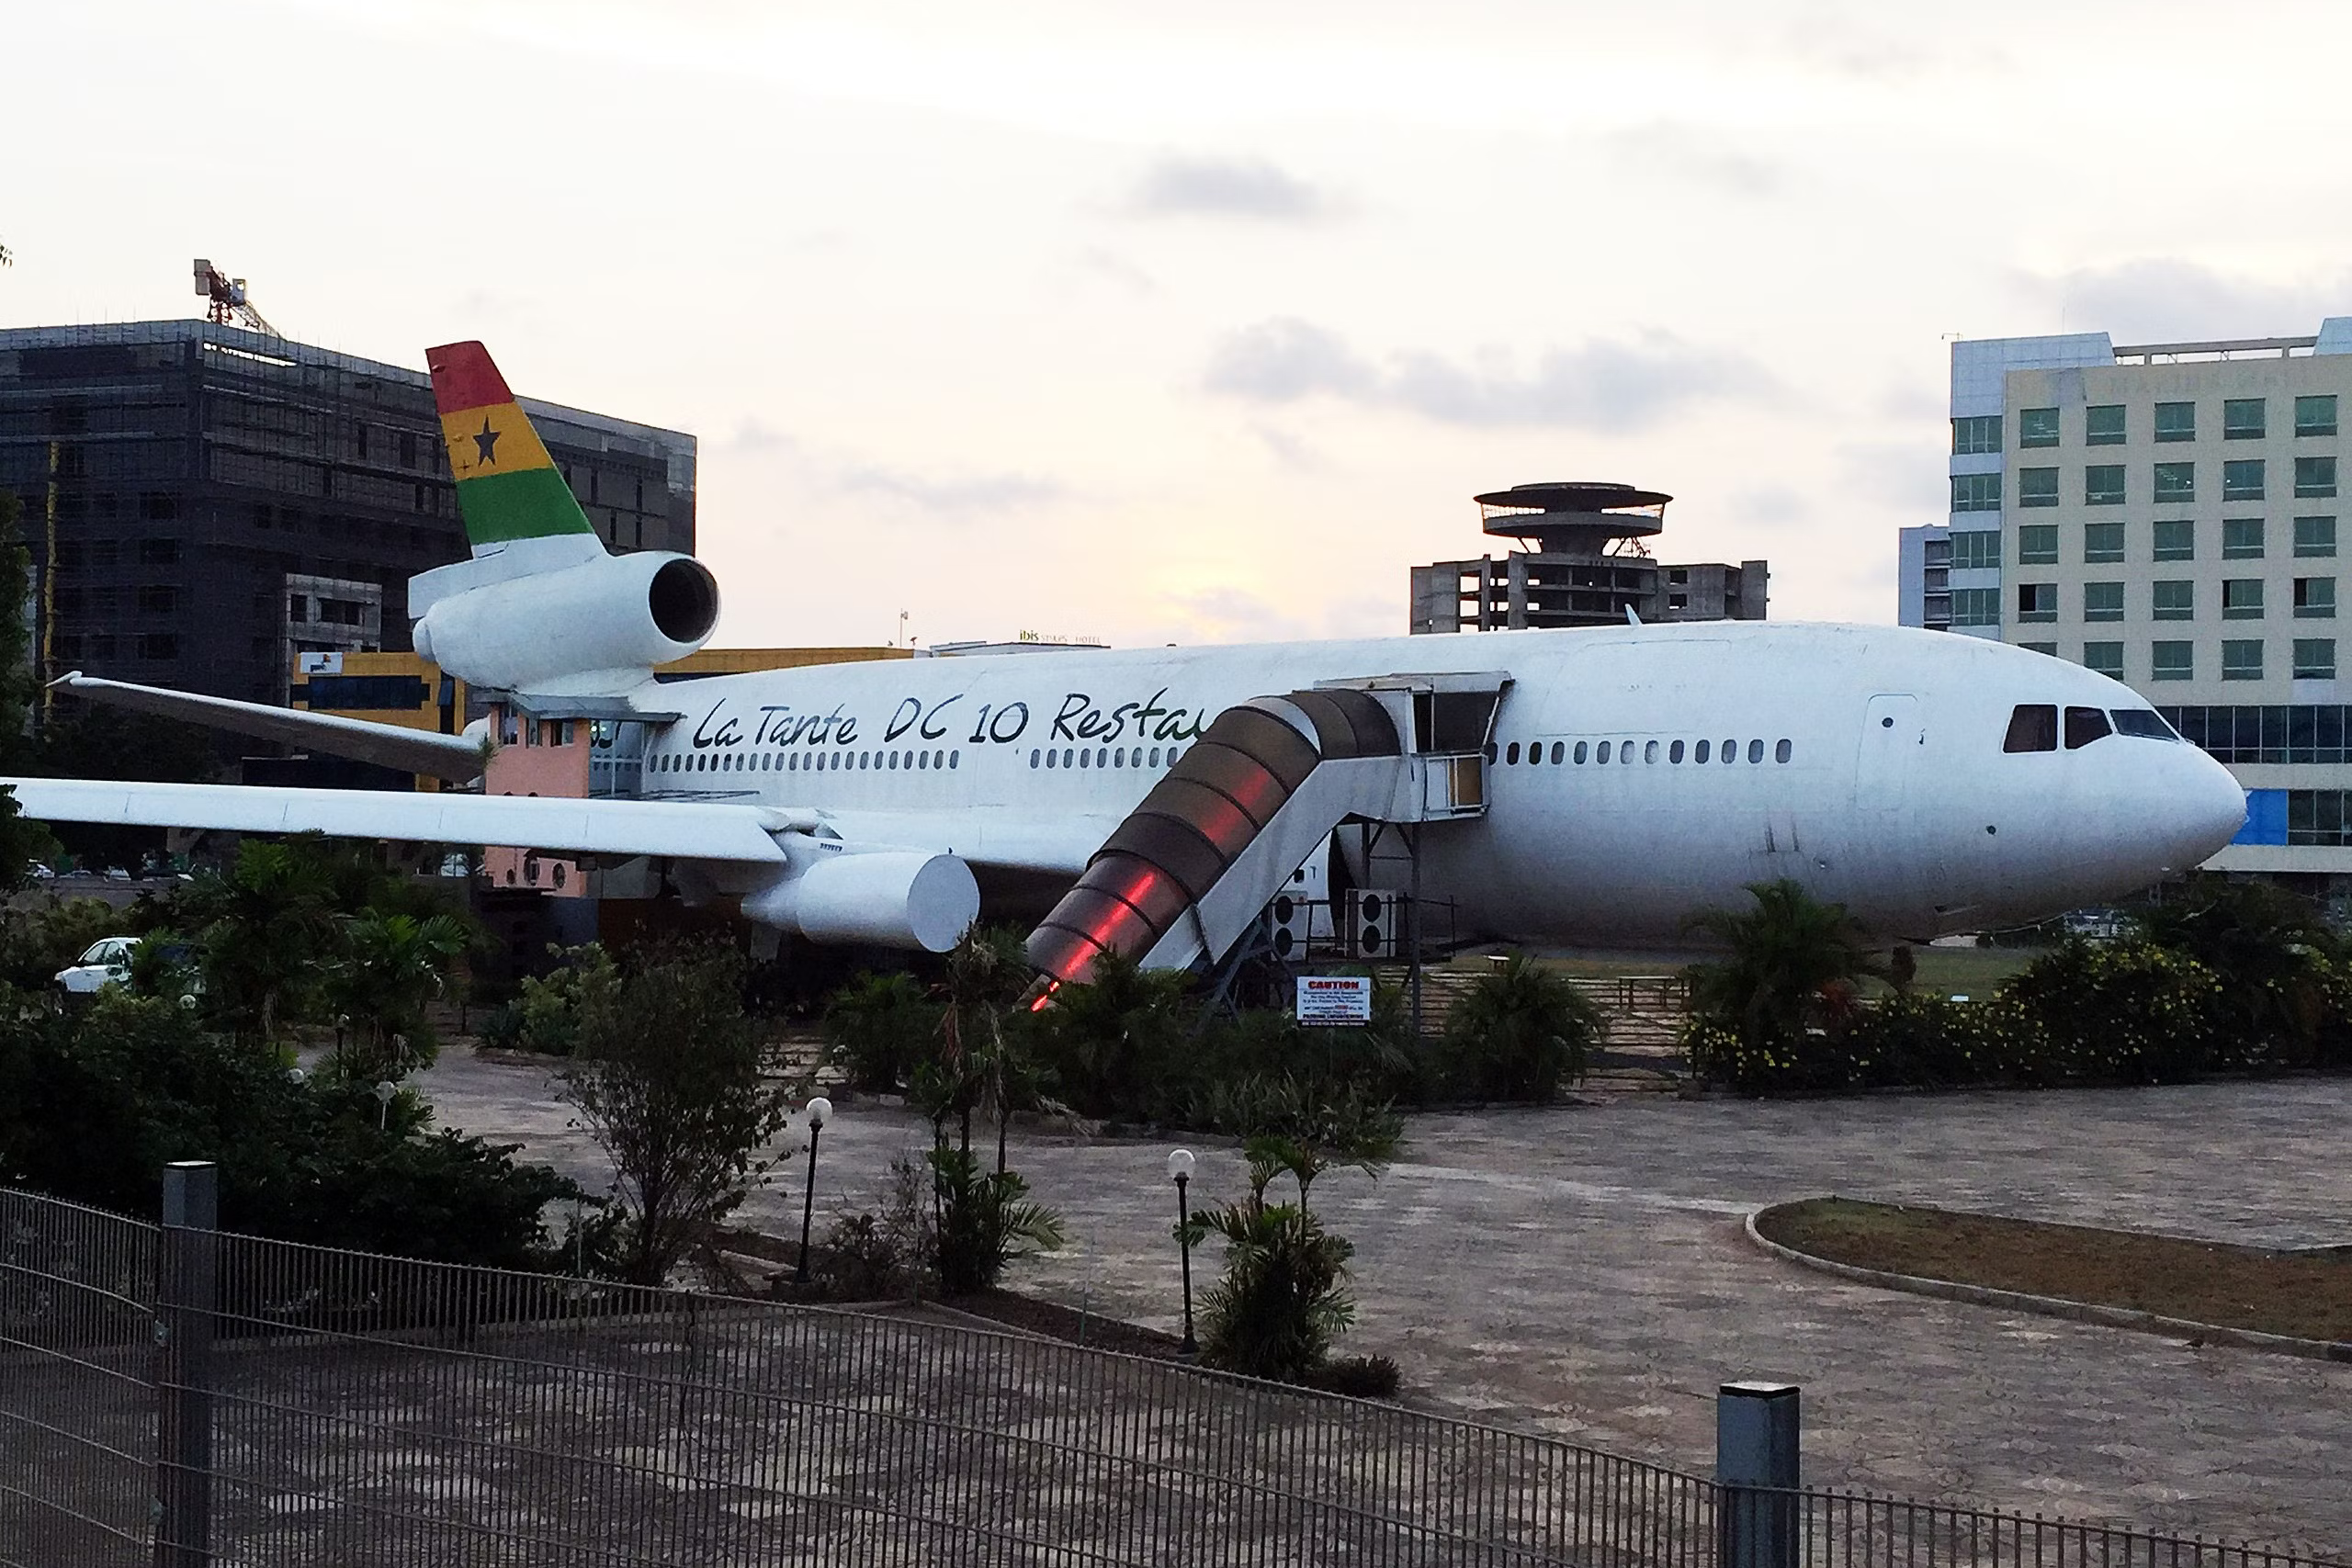 The Ghana DC-10 Restaurant.